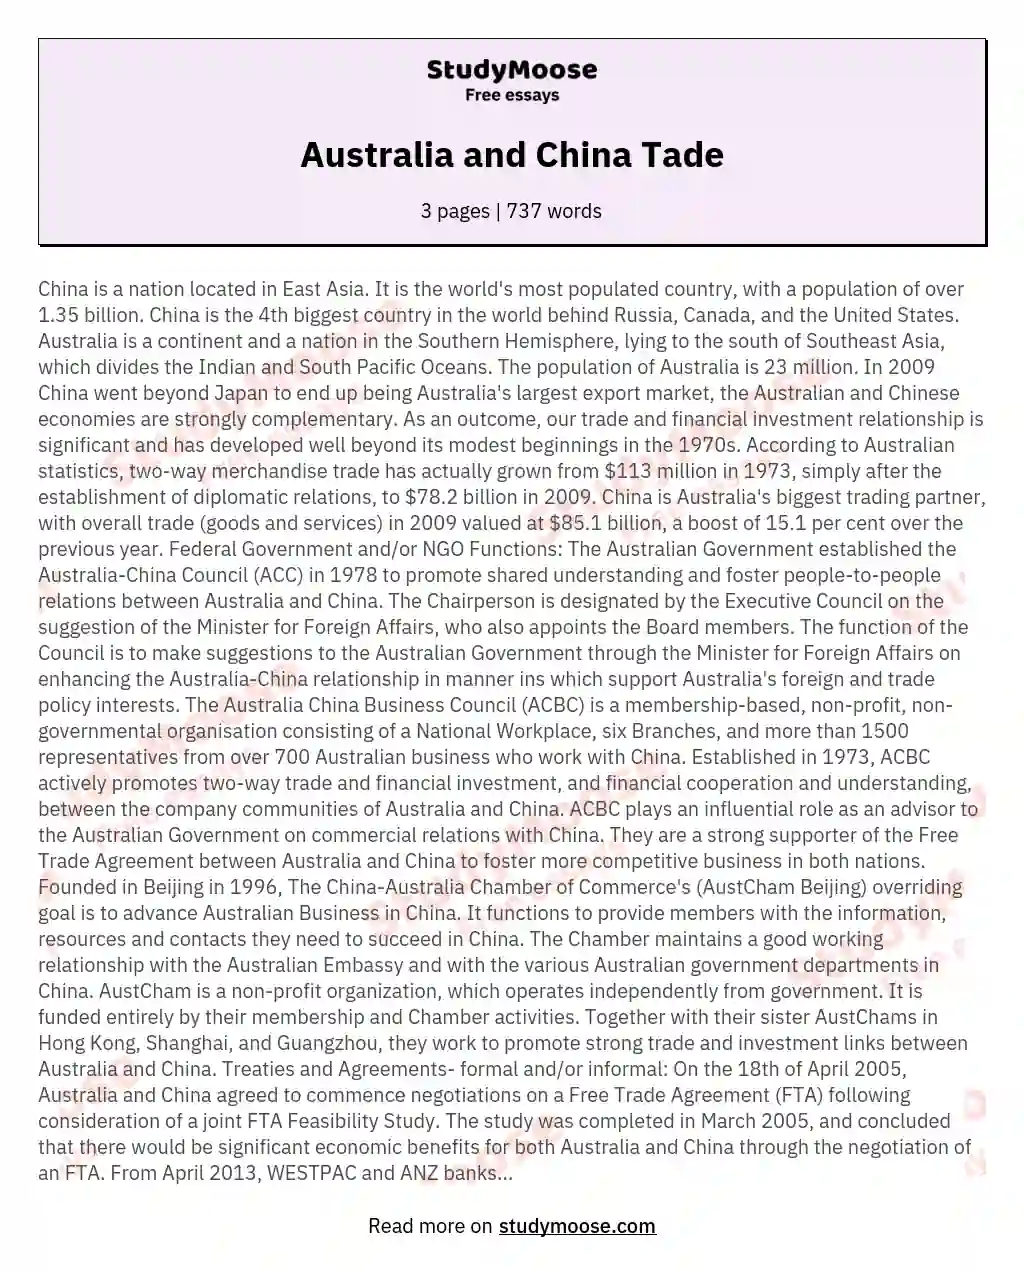 Australia and China Tade essay